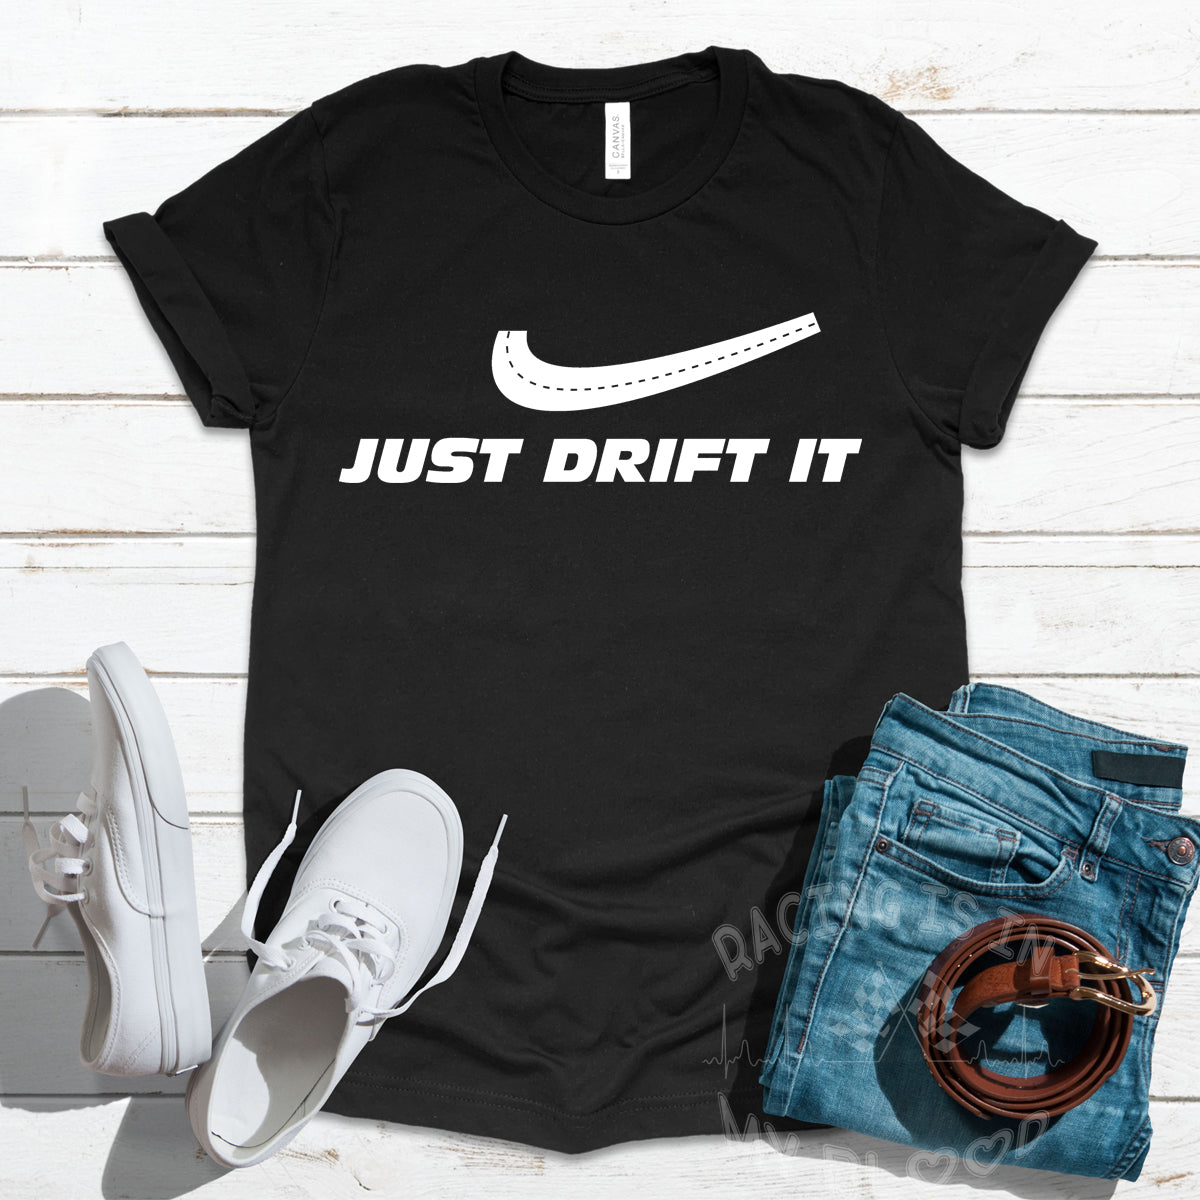 Just Drift It T-Shirts!